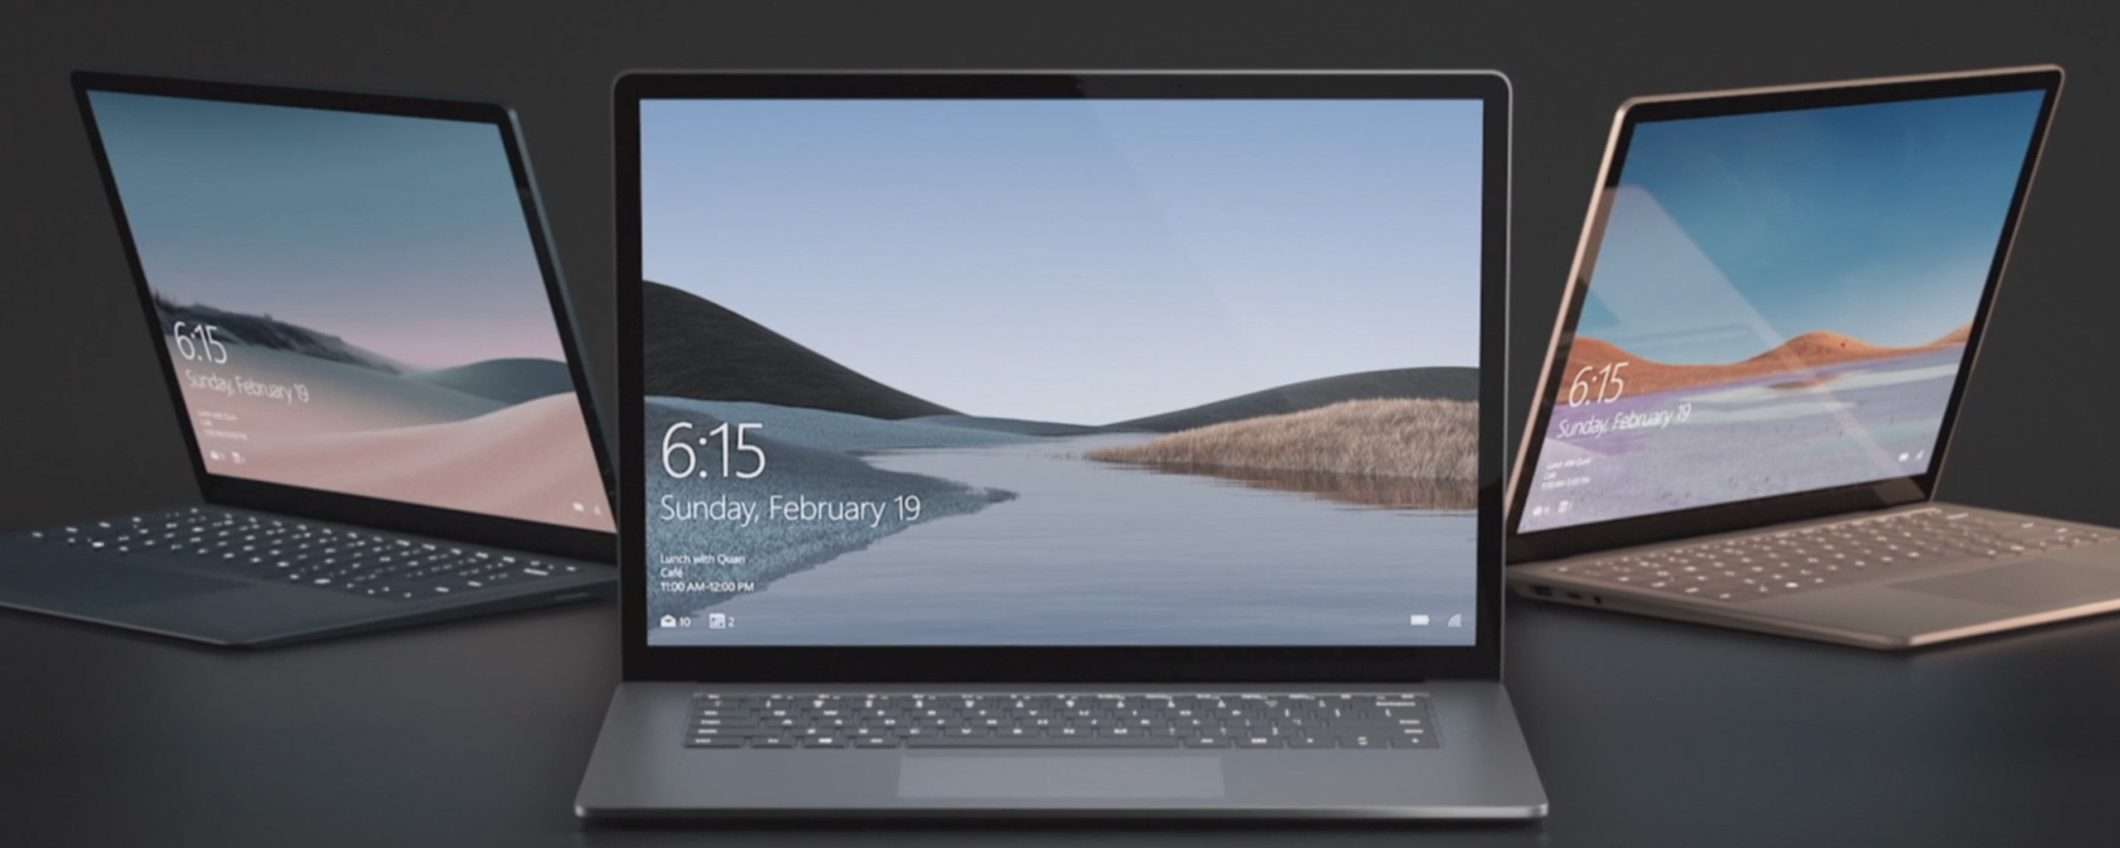 Evento Microsoft: tutto sui nuovi Surface